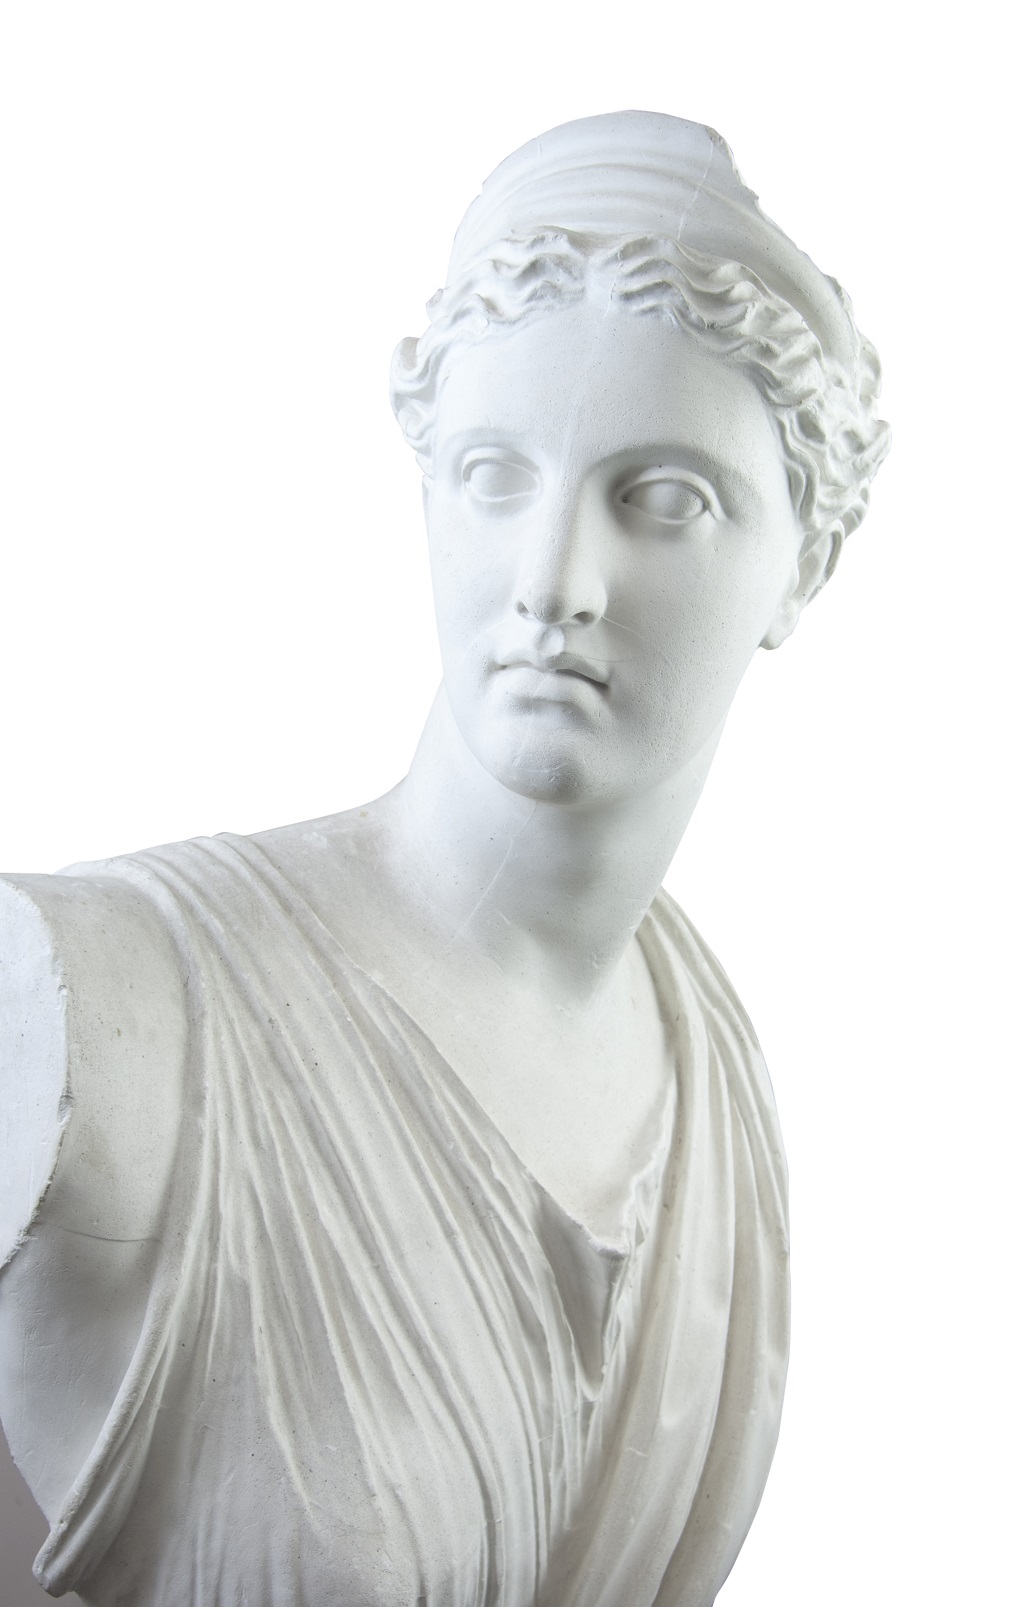 Artemis wurde in der römischen Mythologie Diana genannt